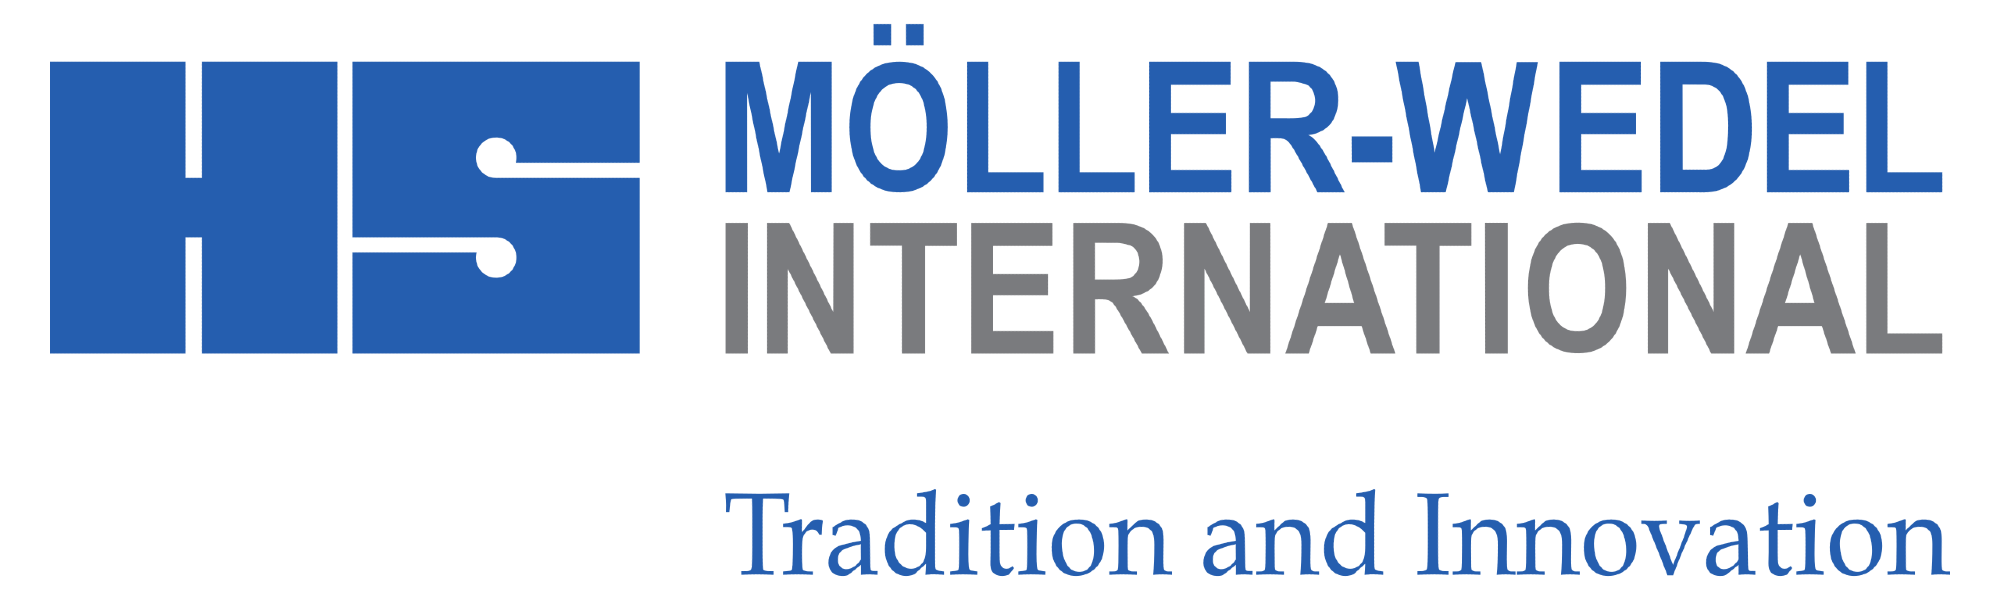 Moeller-Wedel Optical Gmbh logo.